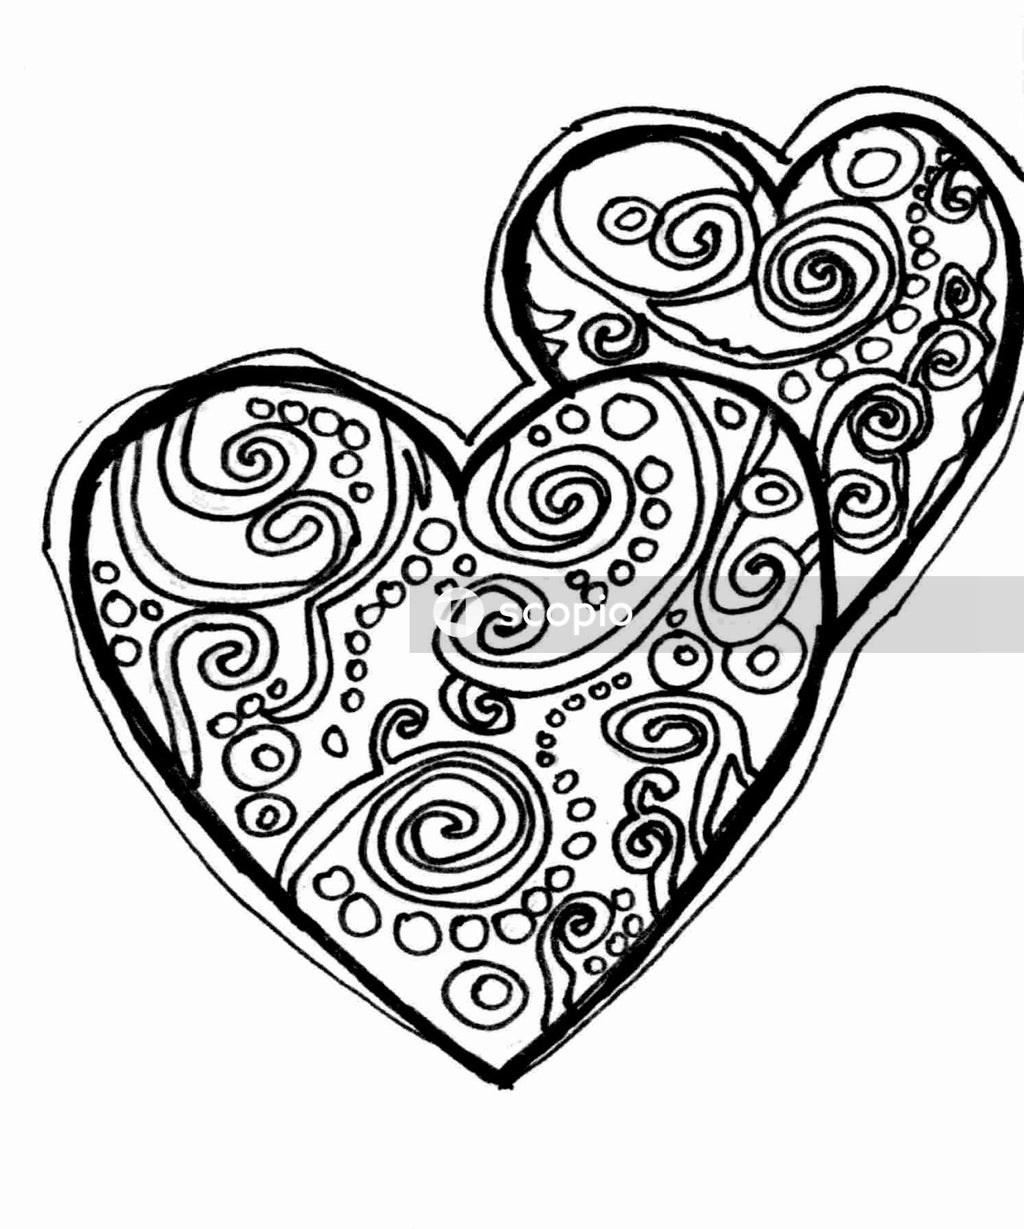 Black and white heart illustration